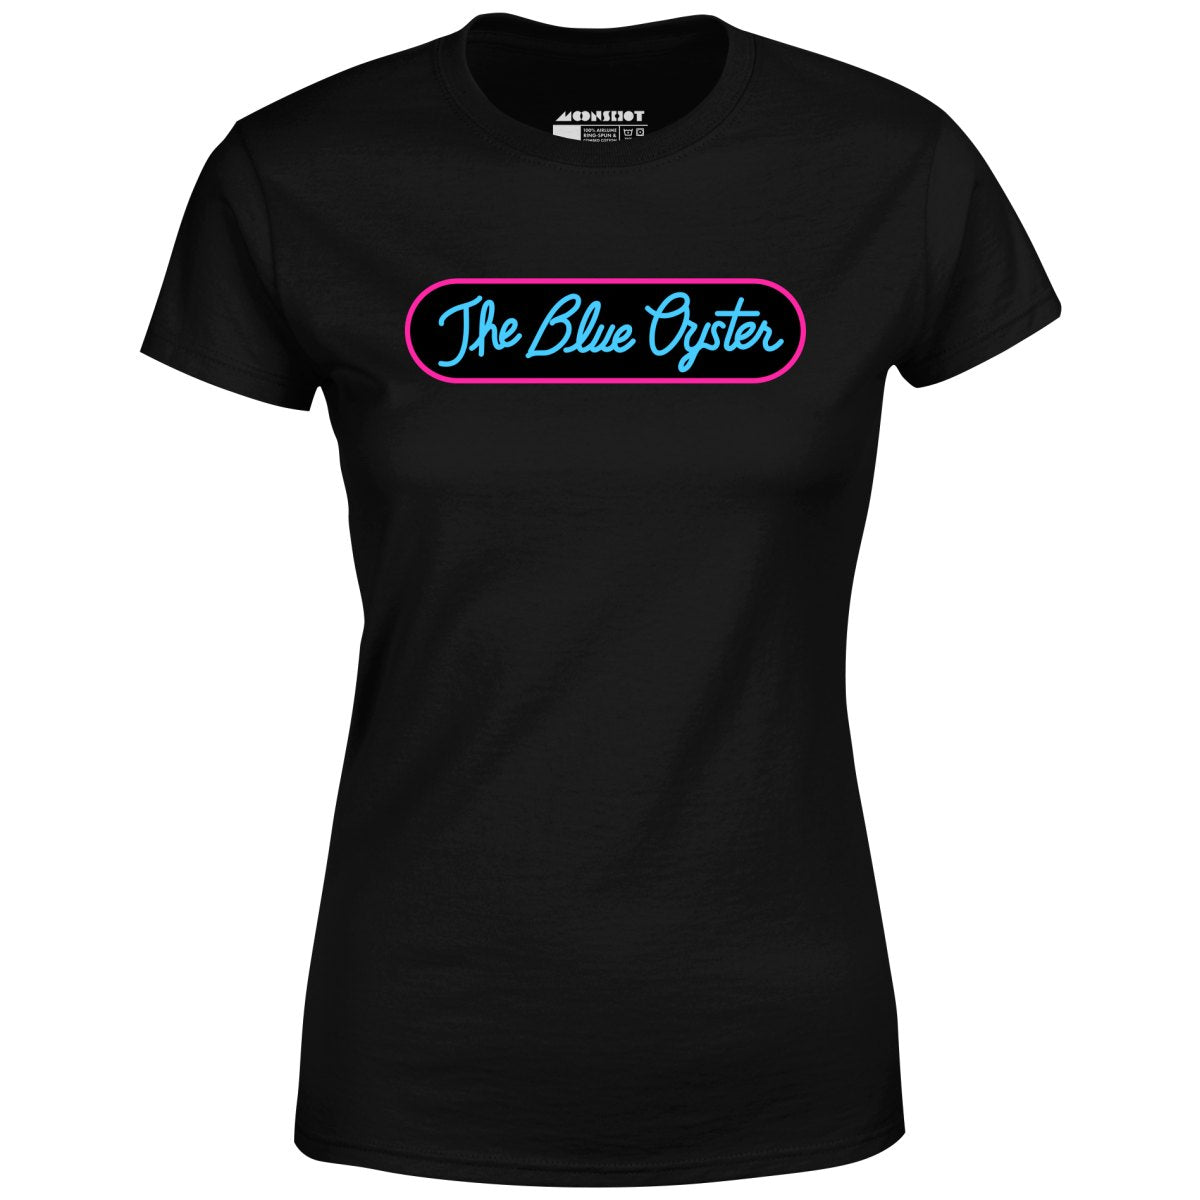 The Blue Oyster - Women's T-Shirt